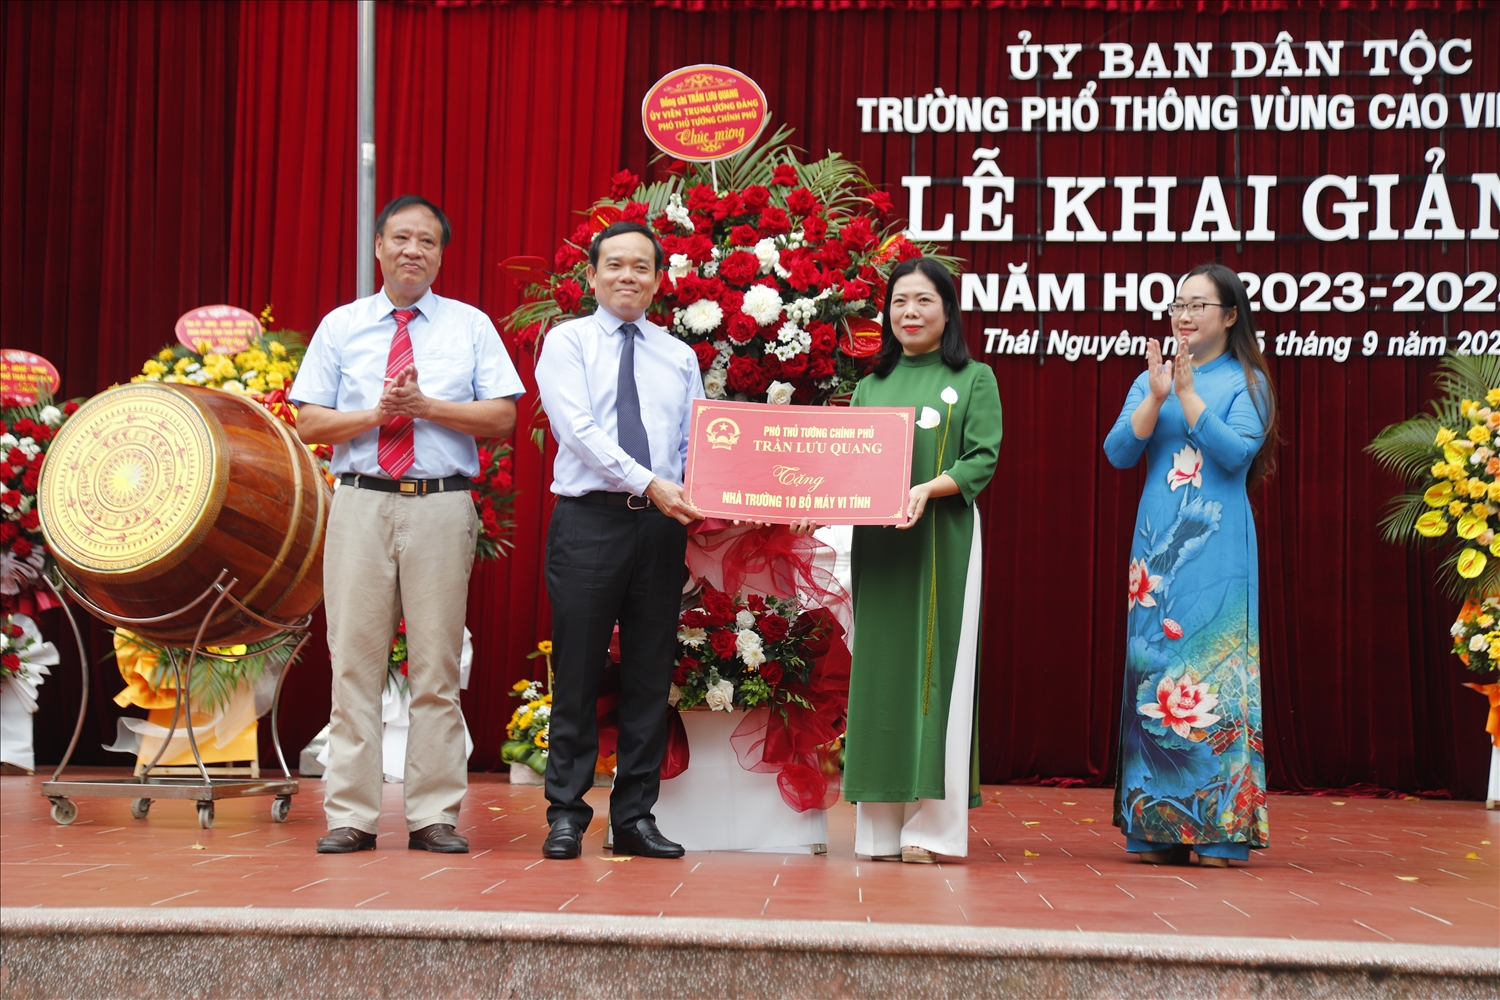 Phó Thủ tướng Chính phủ Trần Lưu Quang tặng 10 bộ máy tính cho Trường Phổ thông vùng cao Việt Bắc